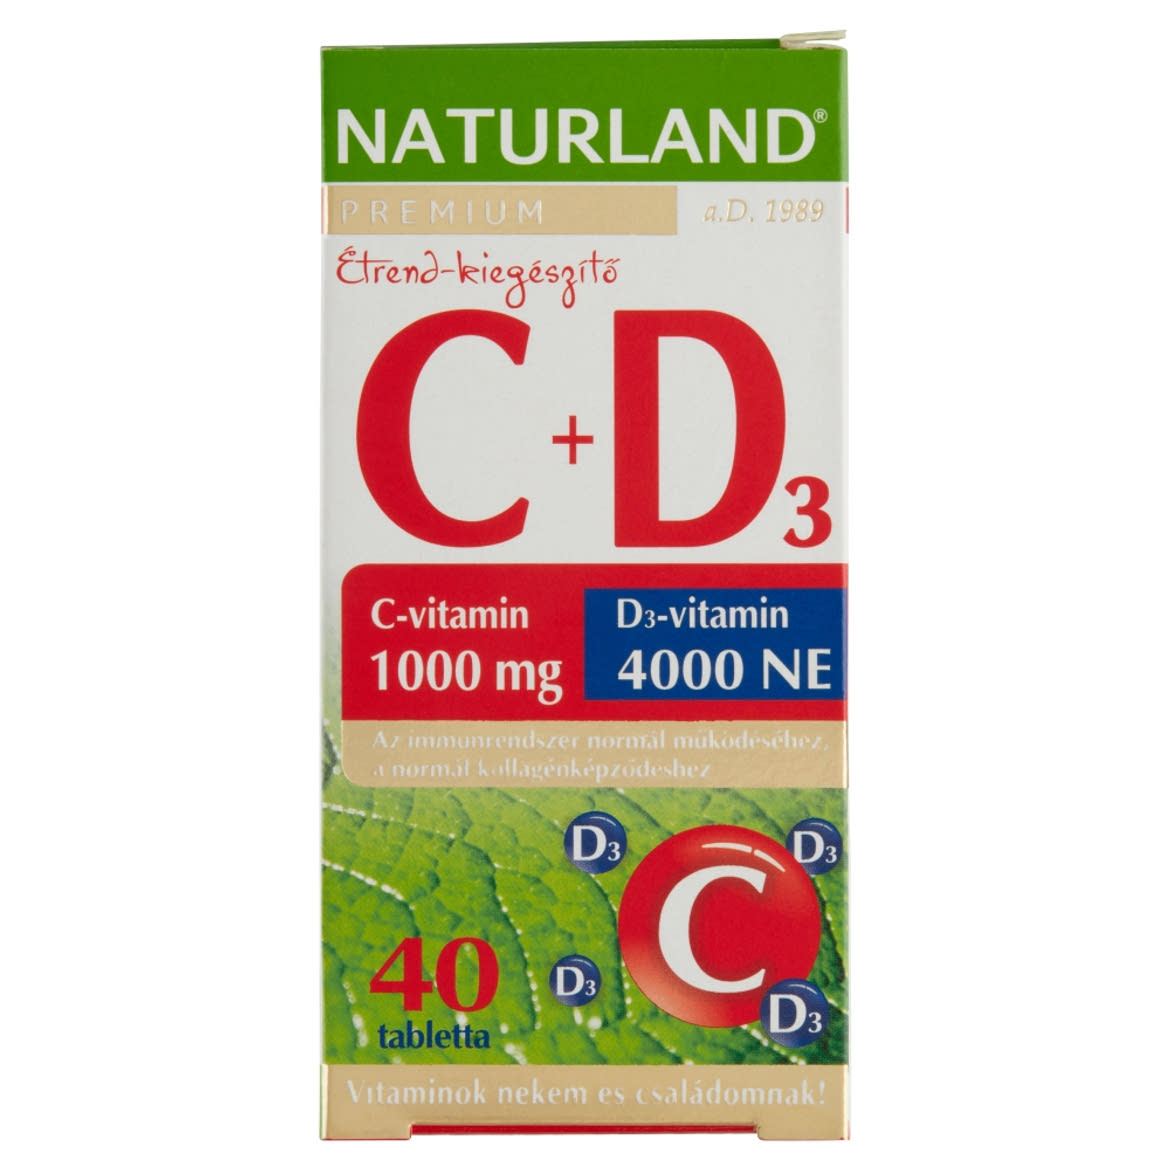 Naturland Premium C-vitamin 1000 mg + D3-vitamin 4000 NE étrend-kiegészítő tabletta